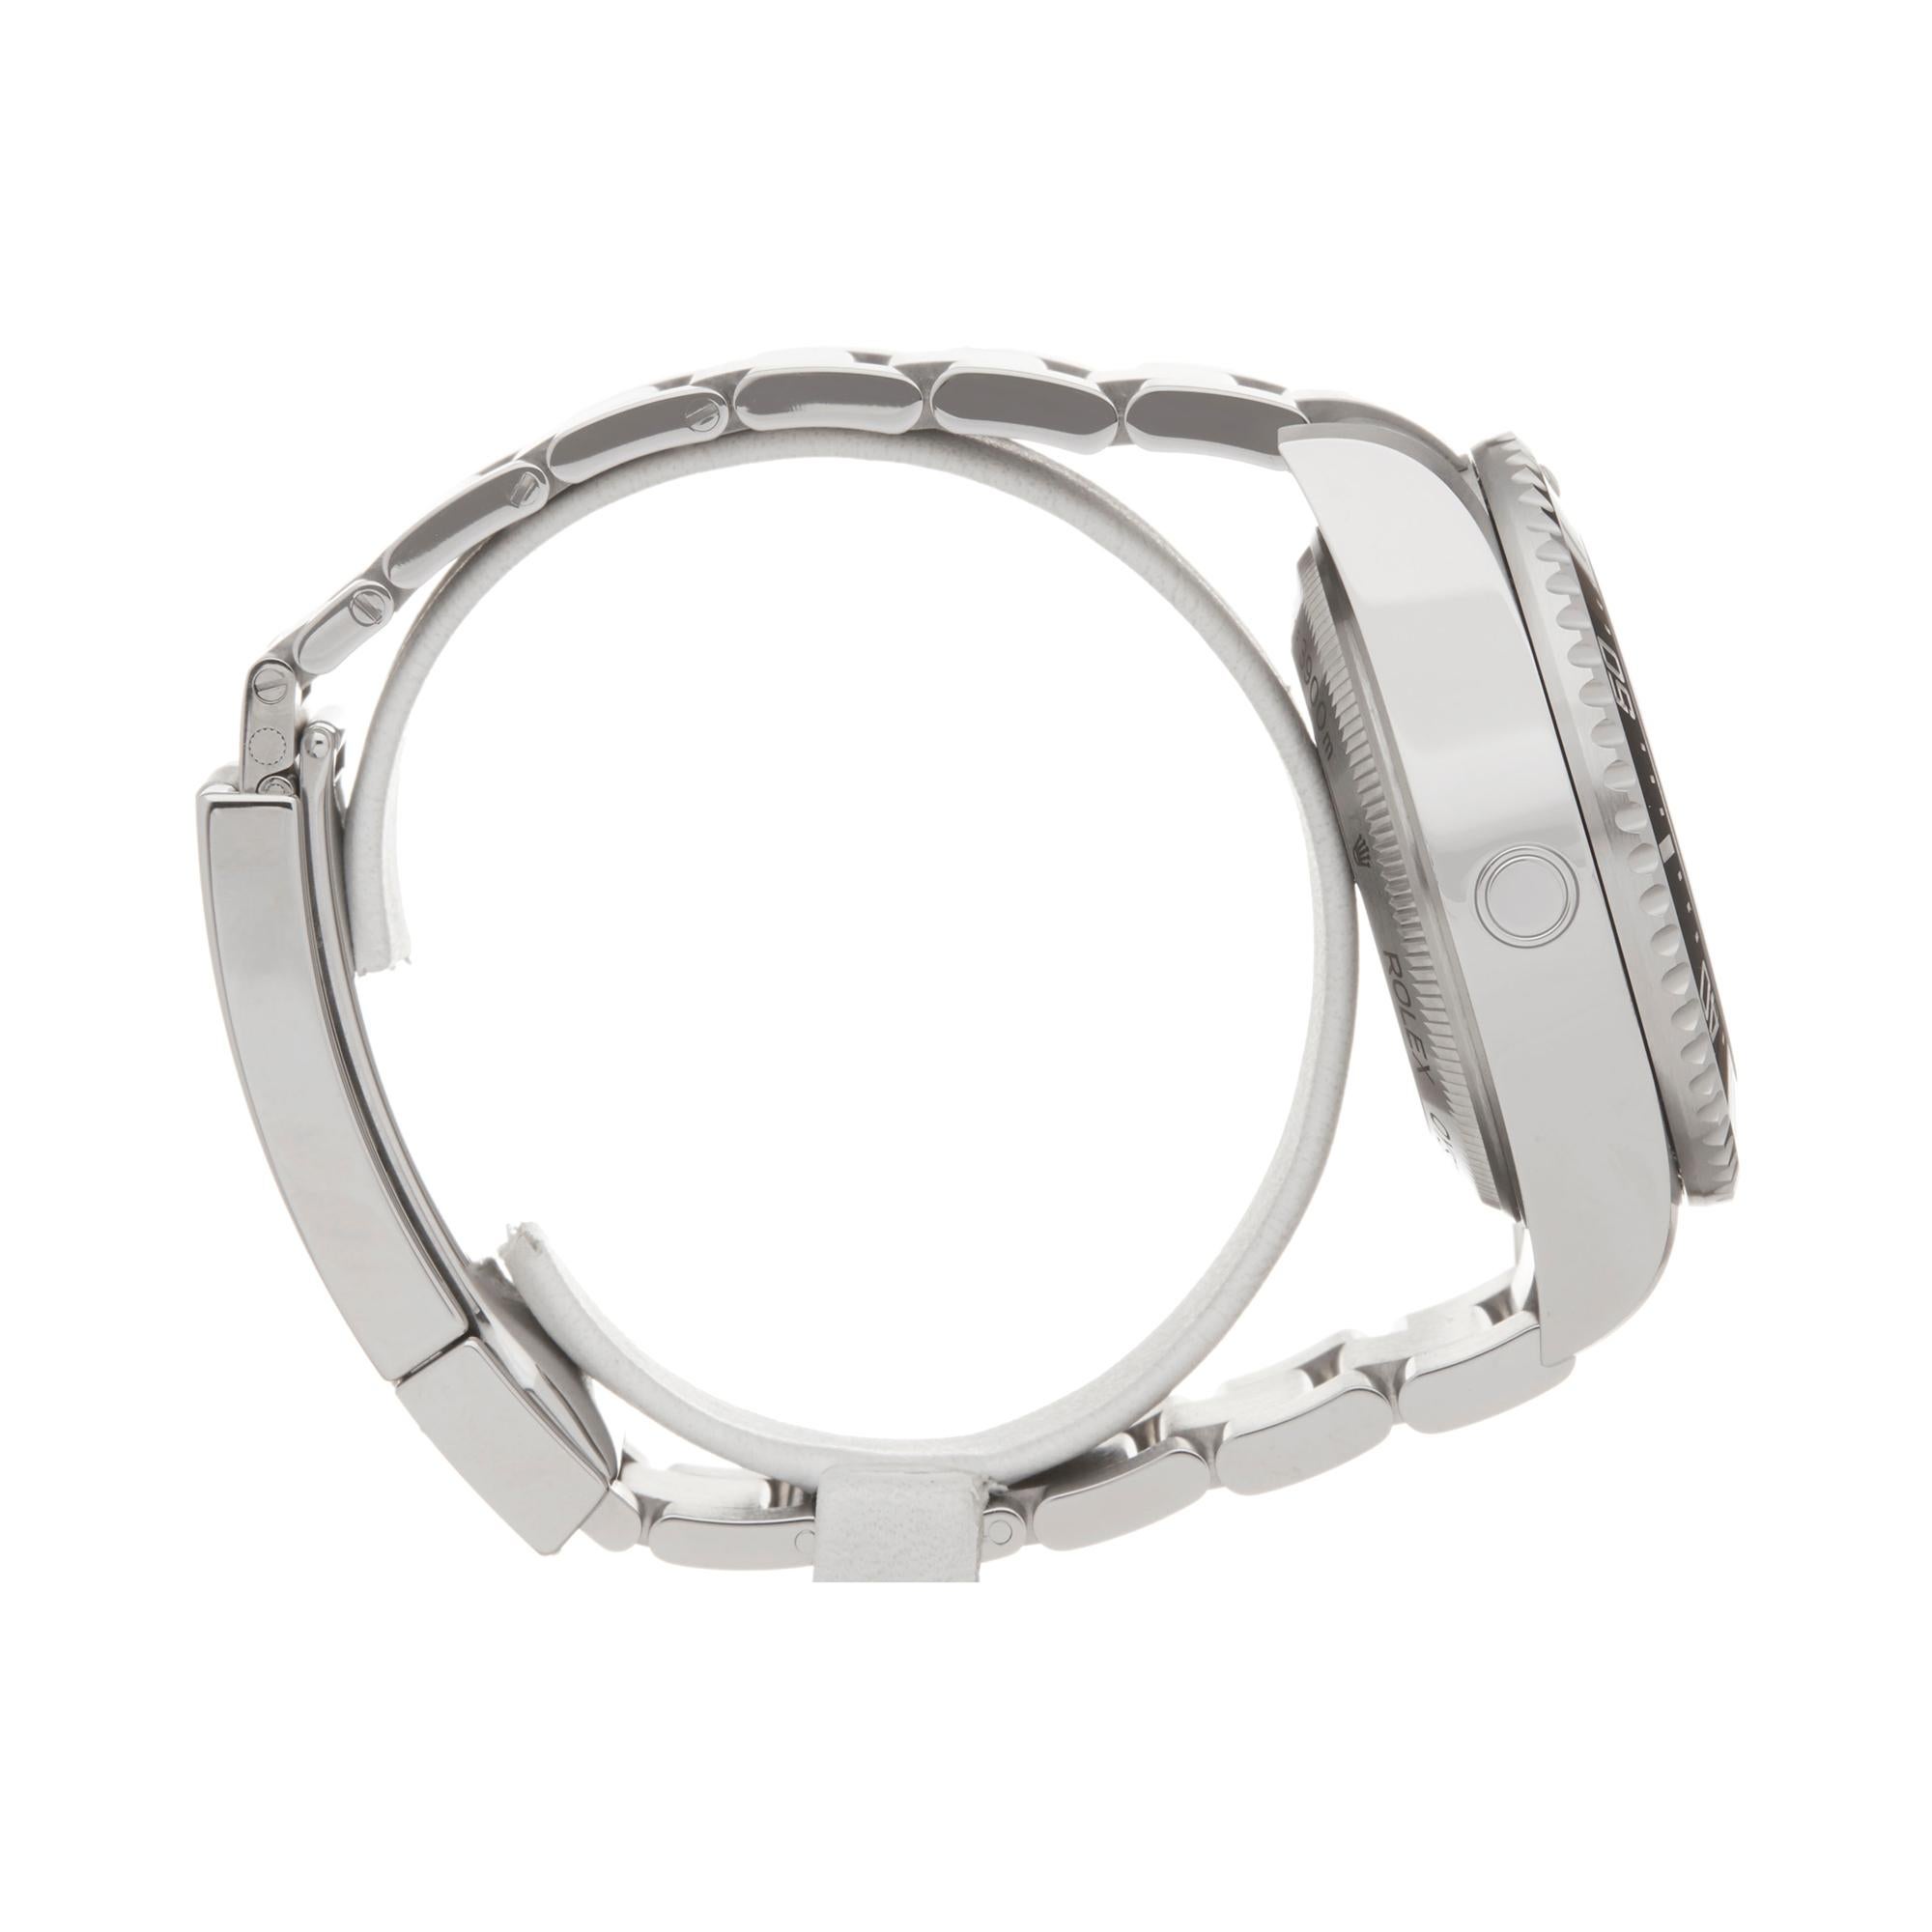 Rolex Sea-Dweller Deepsea Stainless Steel 126660 Wristwatch 1